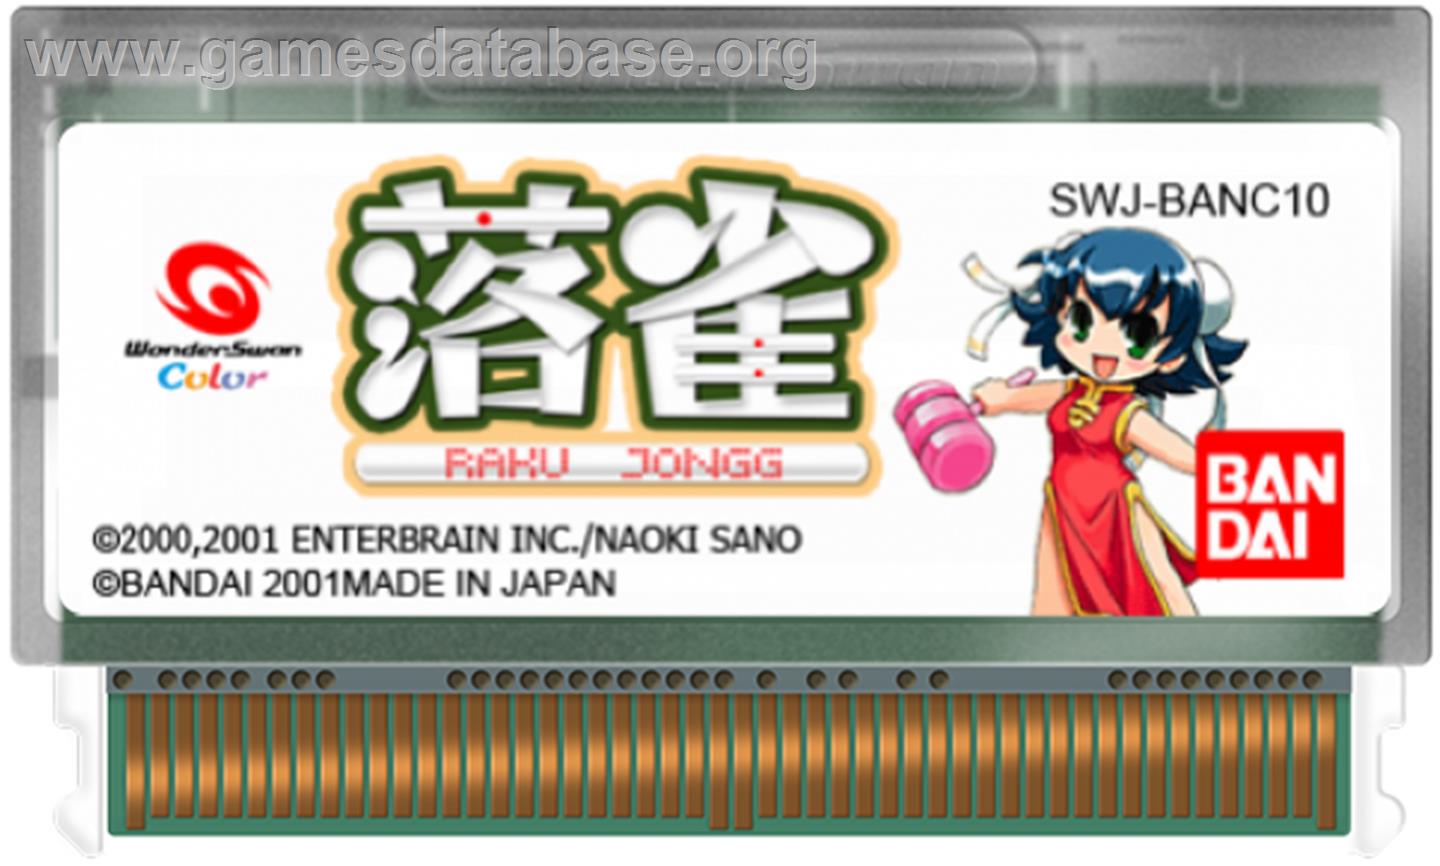 Raku Jongg - Bandai WonderSwan Color - Artwork - Cartridge